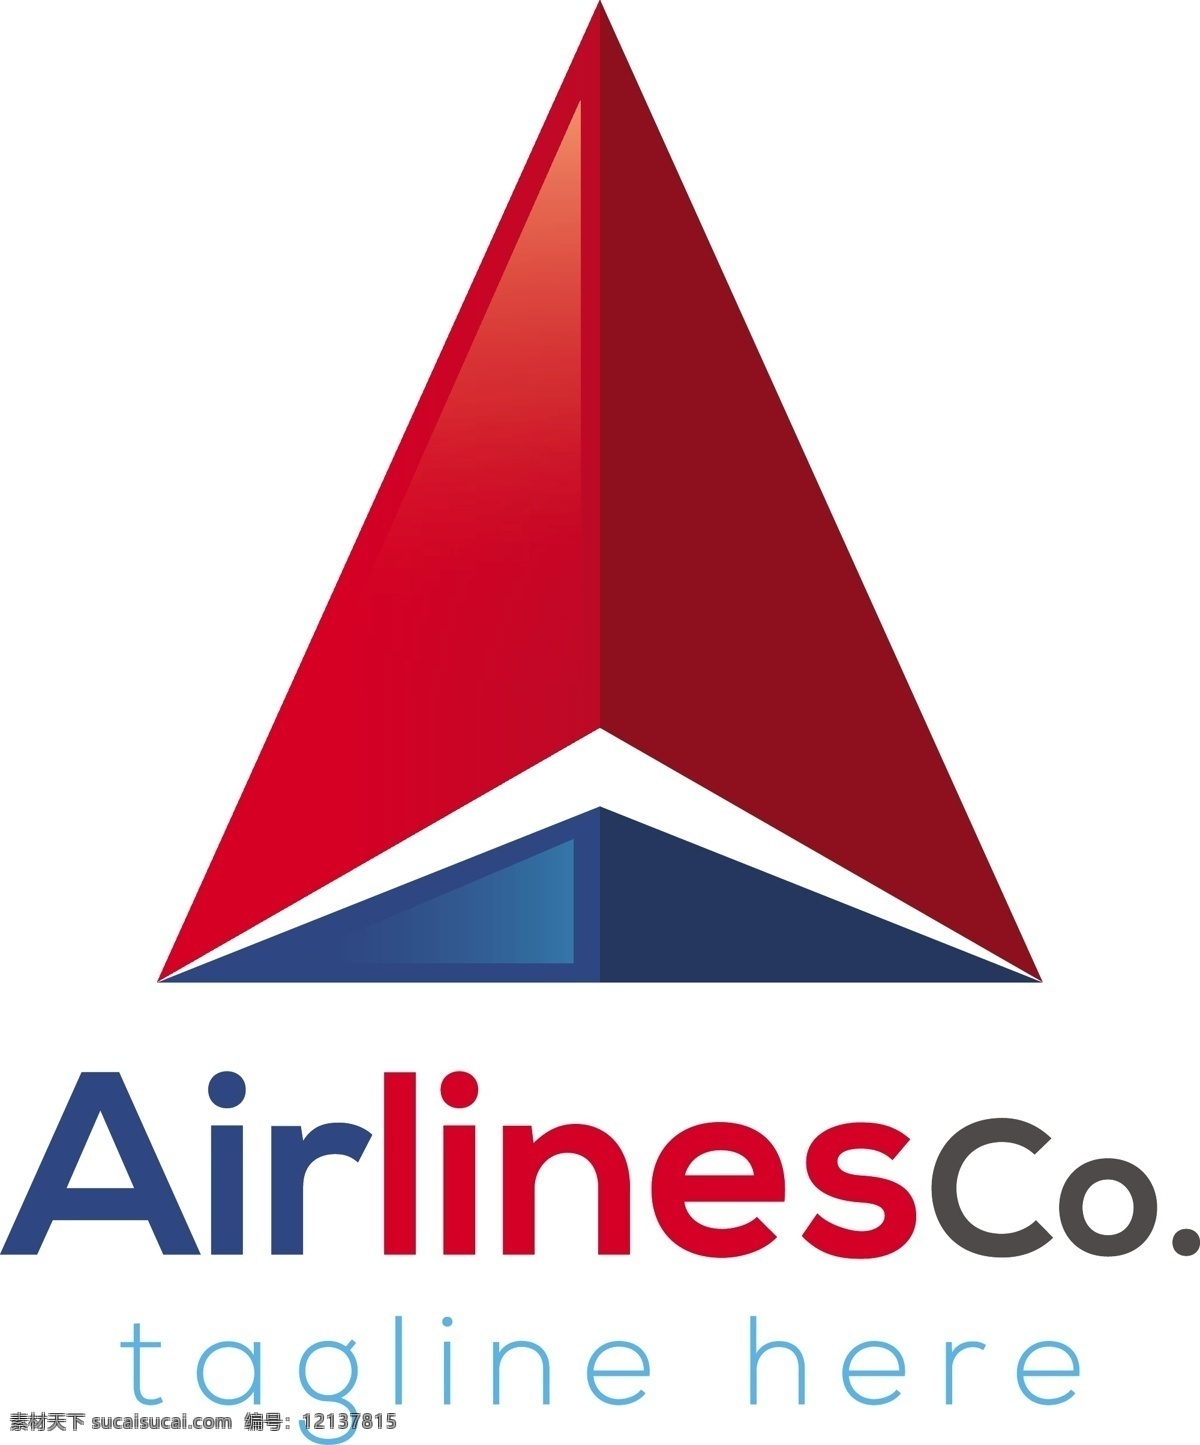 航空公司 徽标 模板 背景 标志 抽象的背景 商业 抽象 标志设计 营销 标识 公司 品牌 创意 抽象的标志 元素 现代 企业形象 插图 设计元素 白色